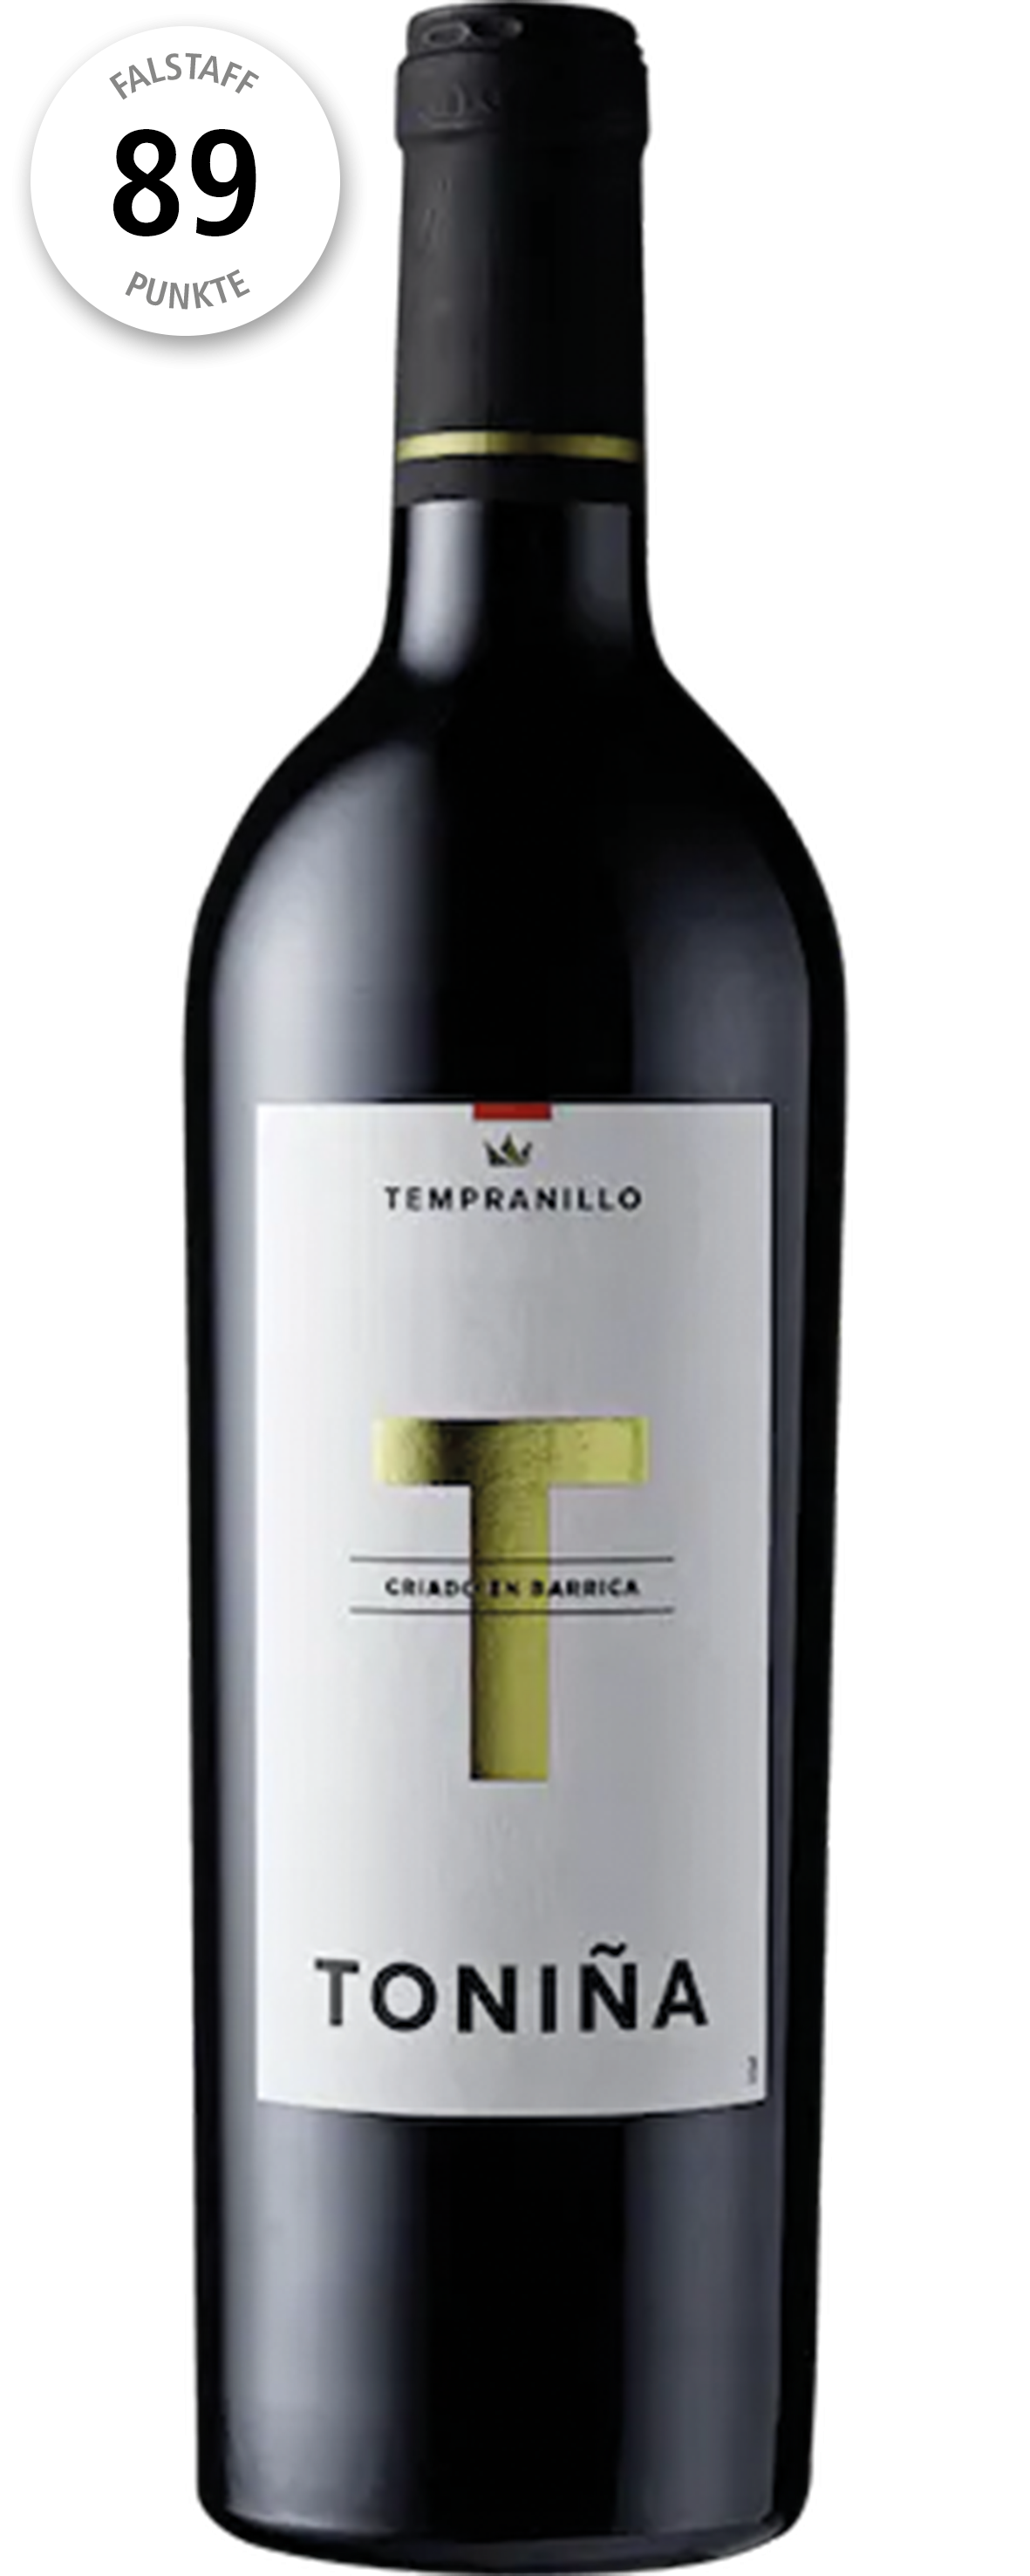 Toniña Tempranillo 
Vino de España